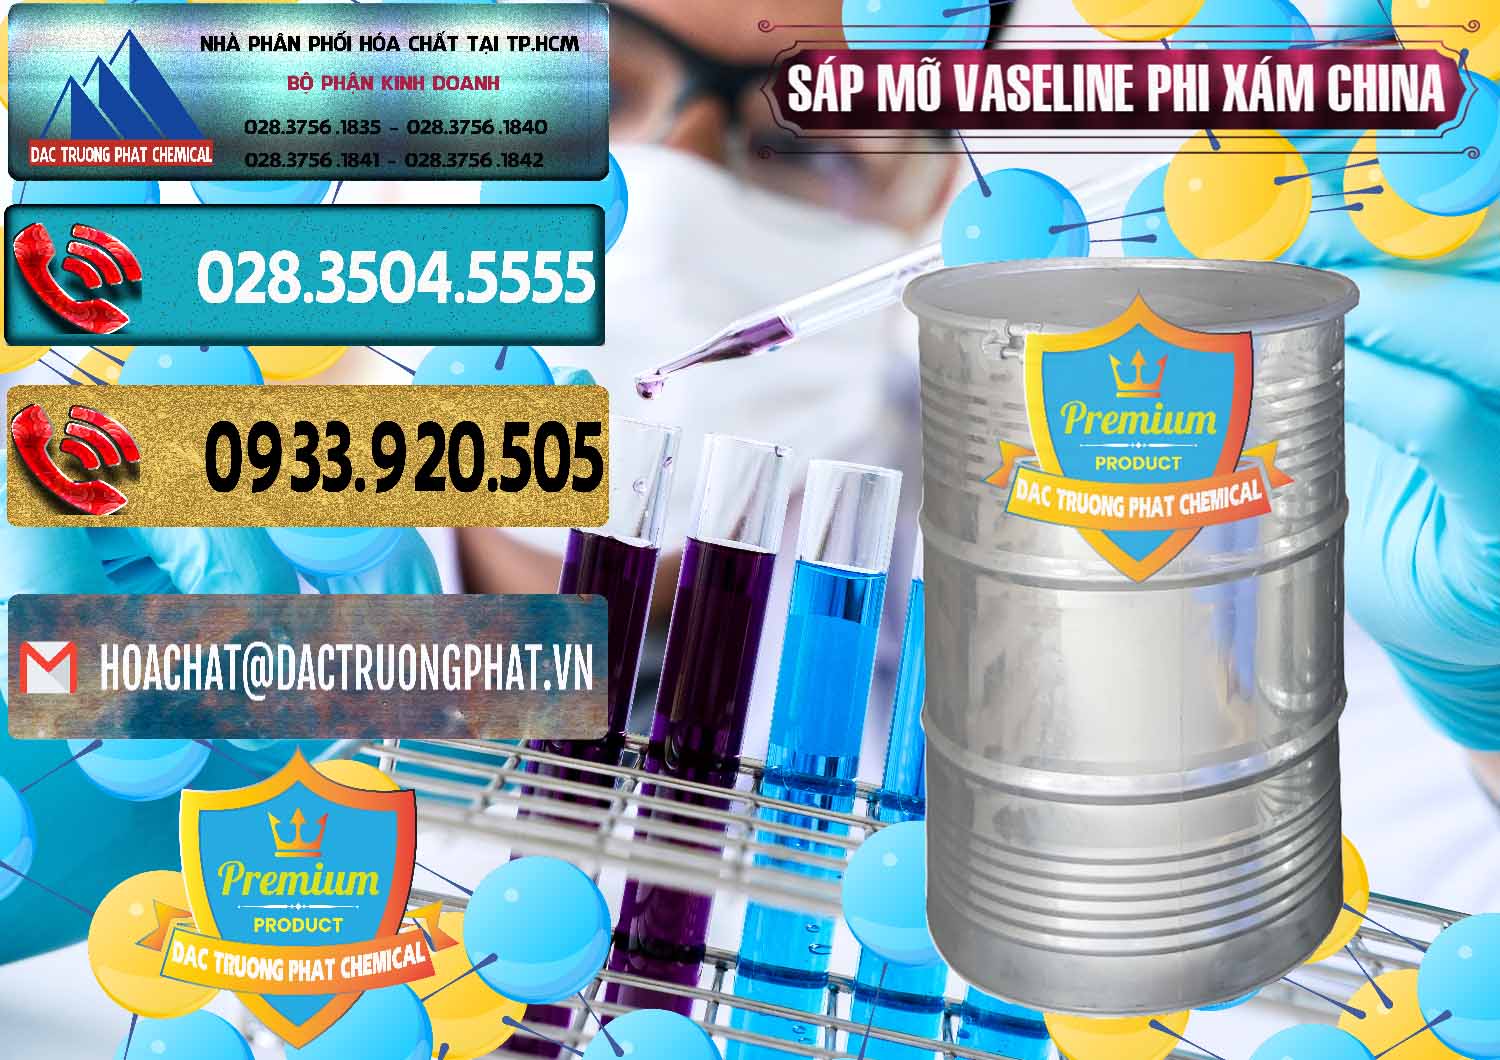 Nơi cung ứng & bán Sáp Mỡ Vaseline Phi Xám Trung Quốc China - 0291 - Cty chuyên phân phối & bán hóa chất tại TP.HCM - hoachatdetnhuom.com